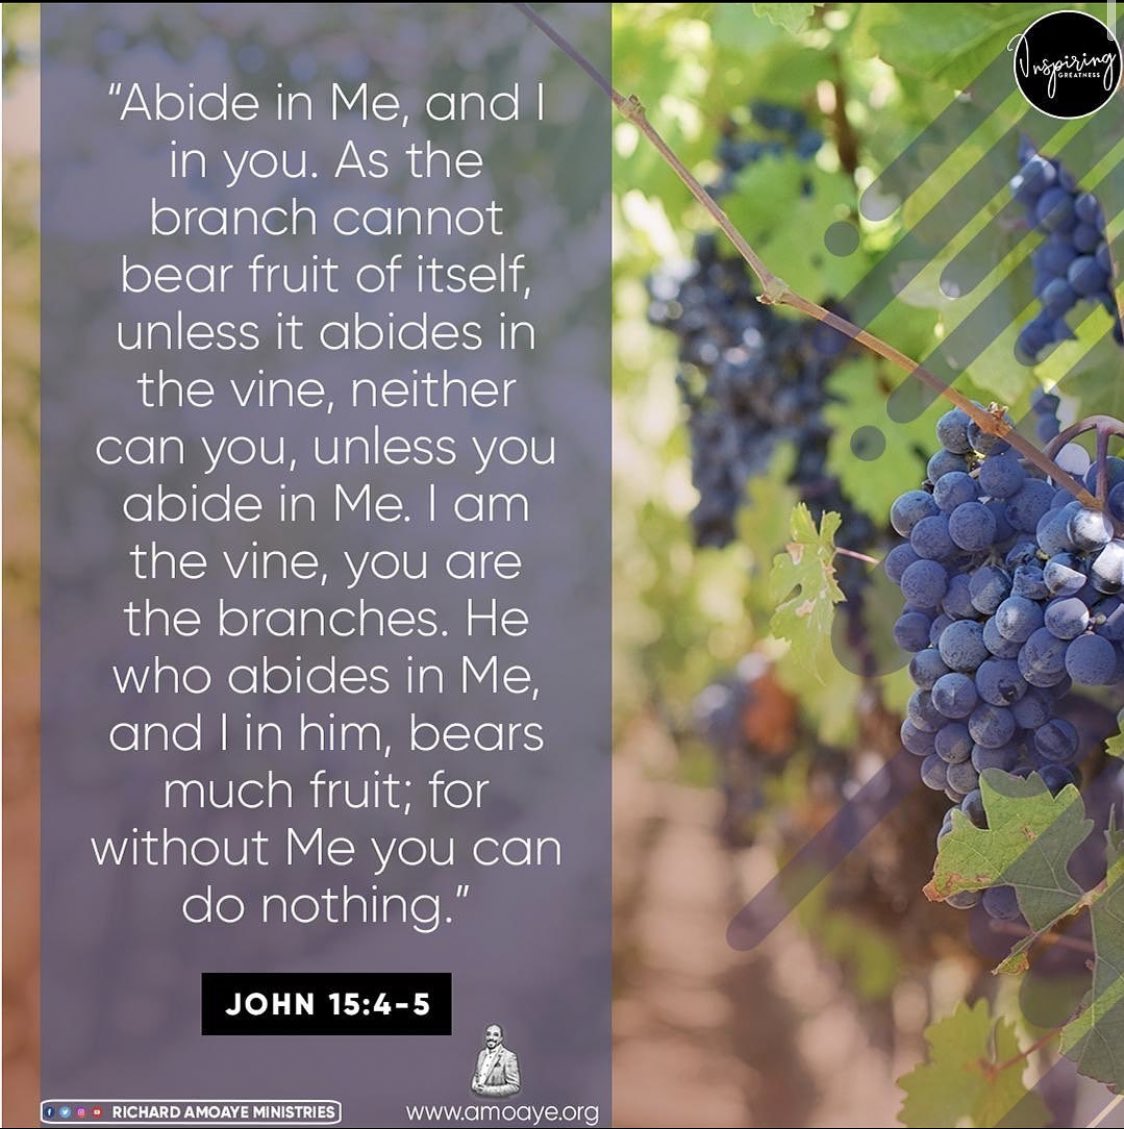 Choose to abide in God.
#Abide
#AbideInHim
#GodsWord